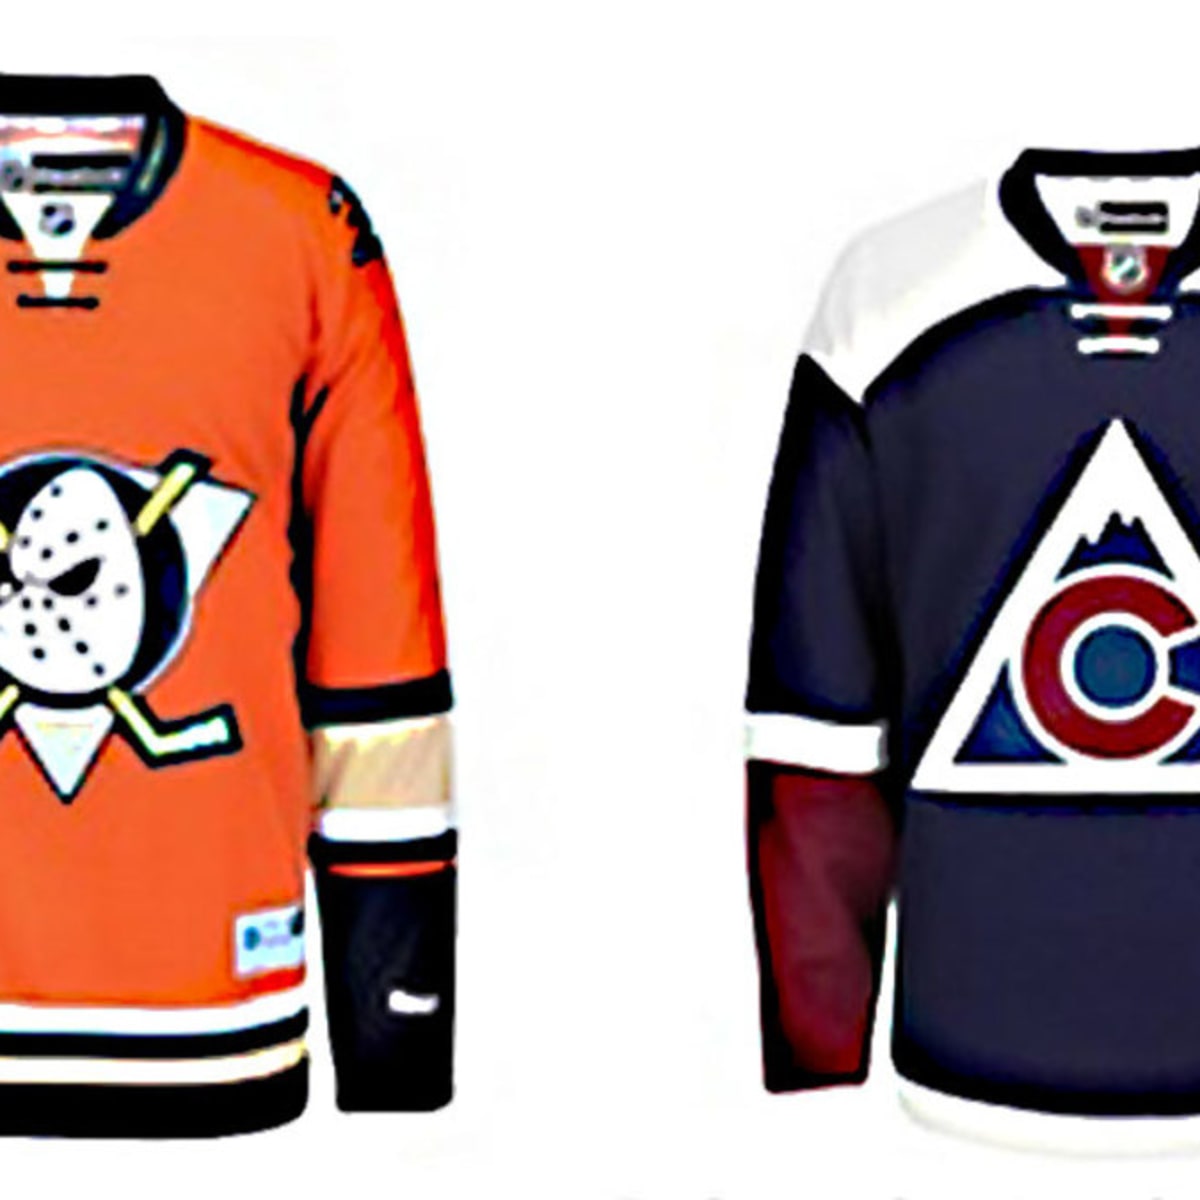 Colorado Rockies Vintage NHL Hockey Jersey Original '80s New Jersey Devils